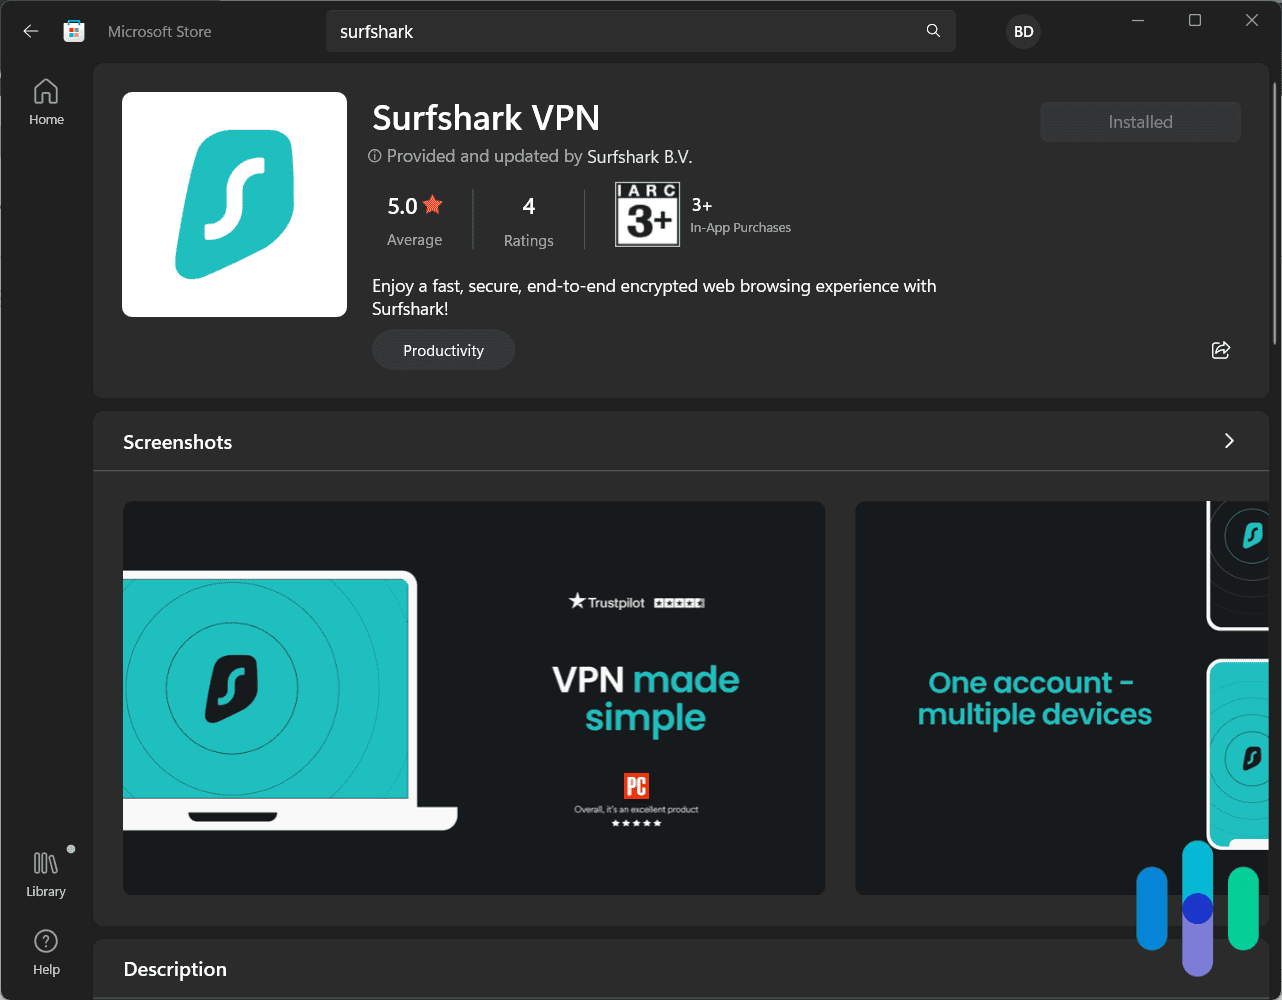 Surfshark-VPN-from-the-Microsoft-Store